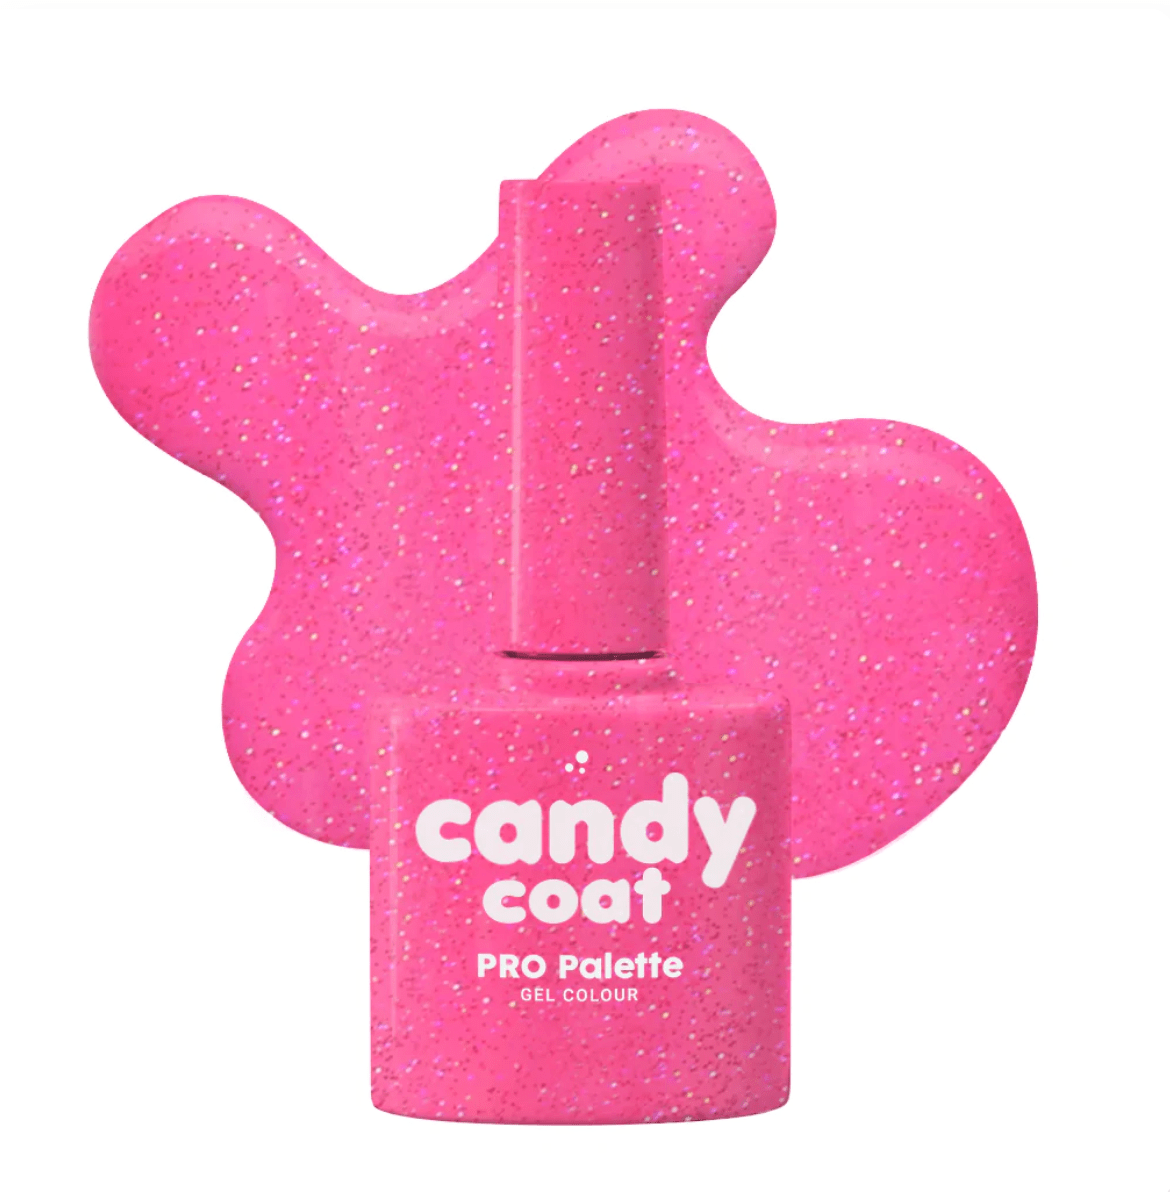 Candy Coat PRO Palette 1241 Jessa